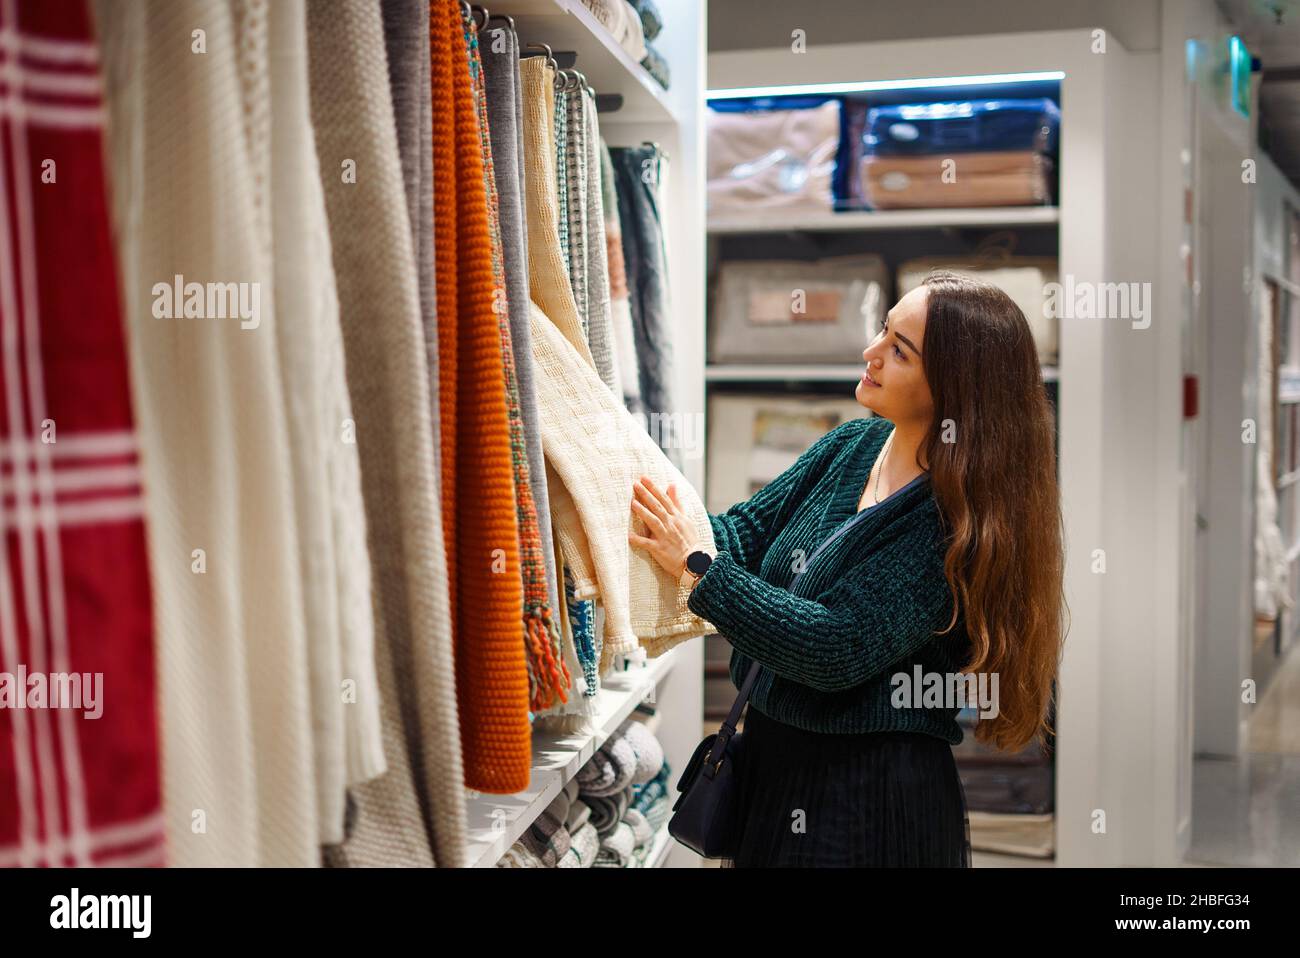 Une femme souriante qui fait du shopping pour sa nouvelle maison, qui se trouve dans le magasin de produits ménagers, regarde sur un stand avec des couvertures suspendues de différentes couleurs, touche du tissu, évalue la qualité des produits Banque D'Images